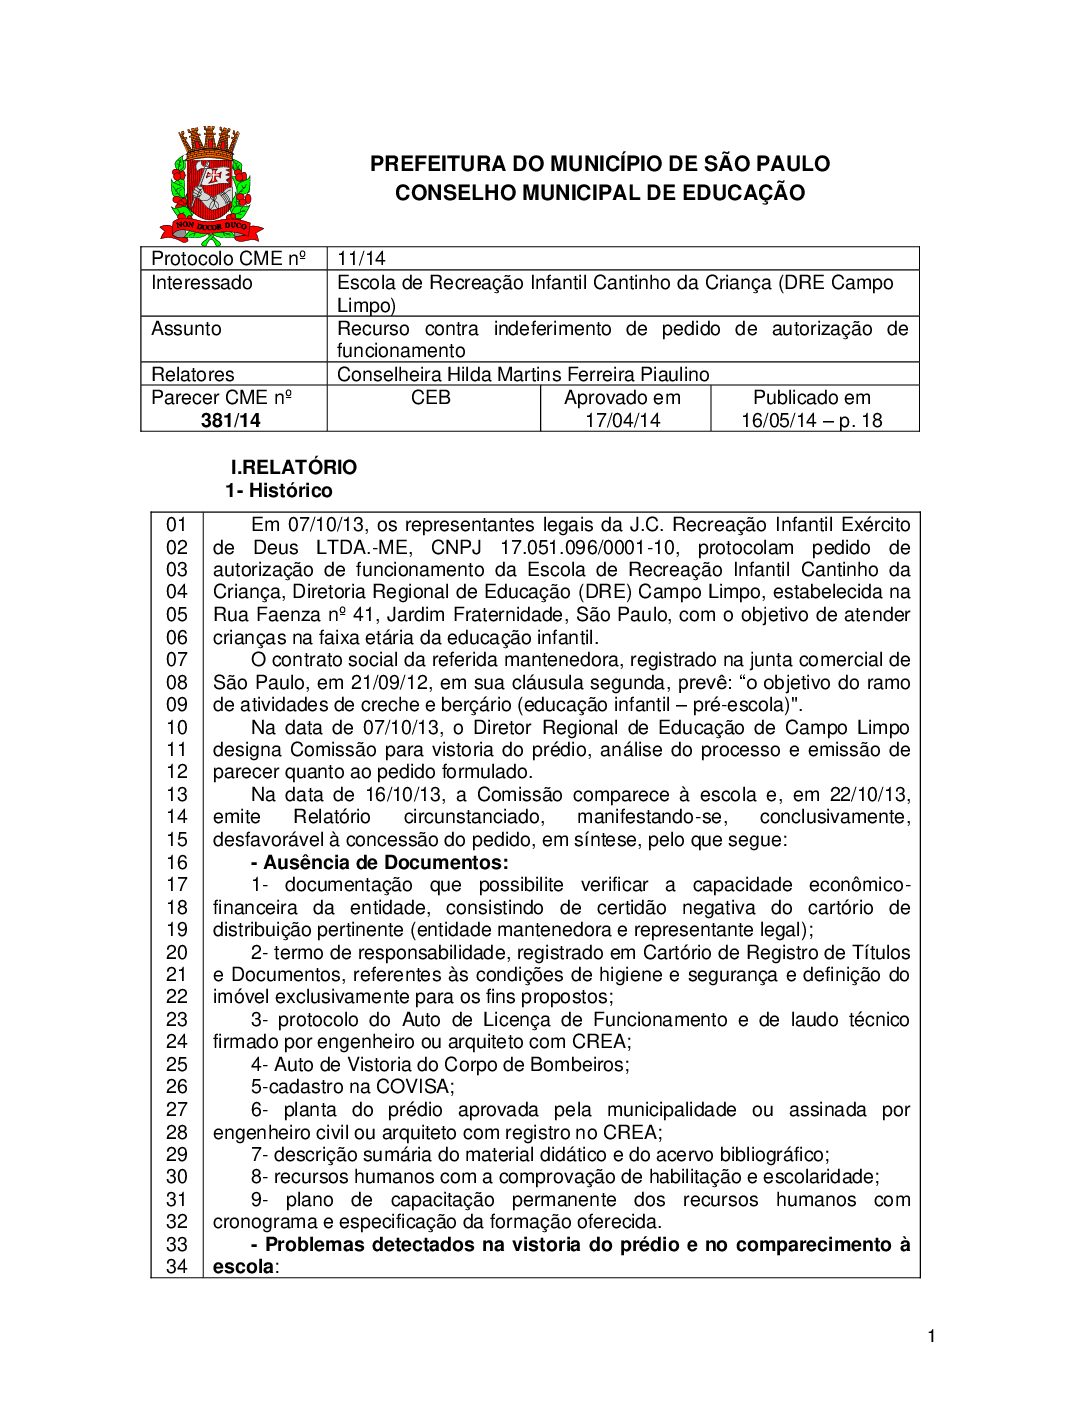 Parecer CME nº 381/2014 - Escola de Recreação Infantil Cantinho da Criança (DRE Campo Limpo) - Recurso contra indeferimento de pedido de autorização de funcionamento 